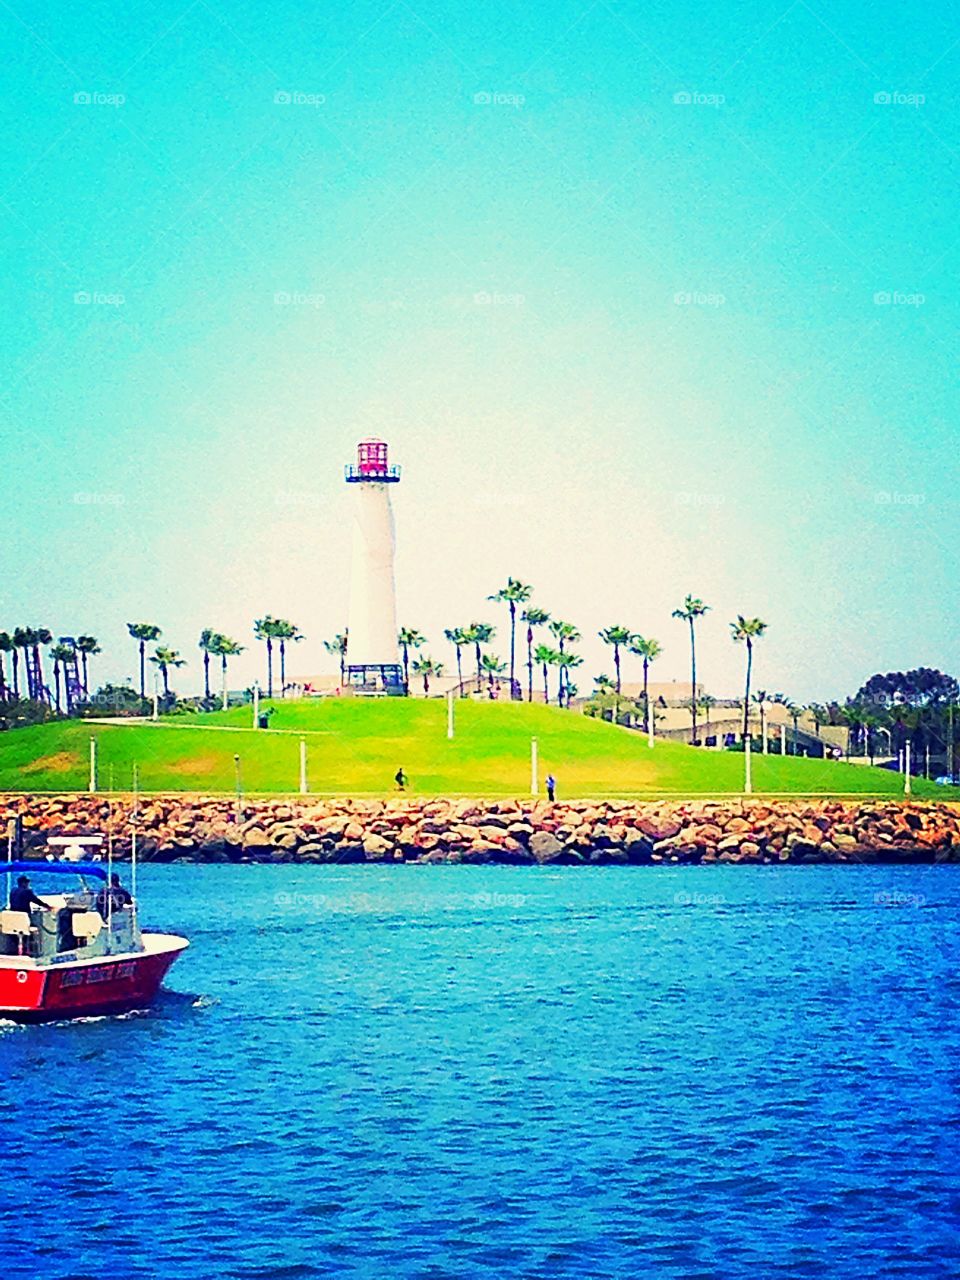 Long Beach, California lighthouse 